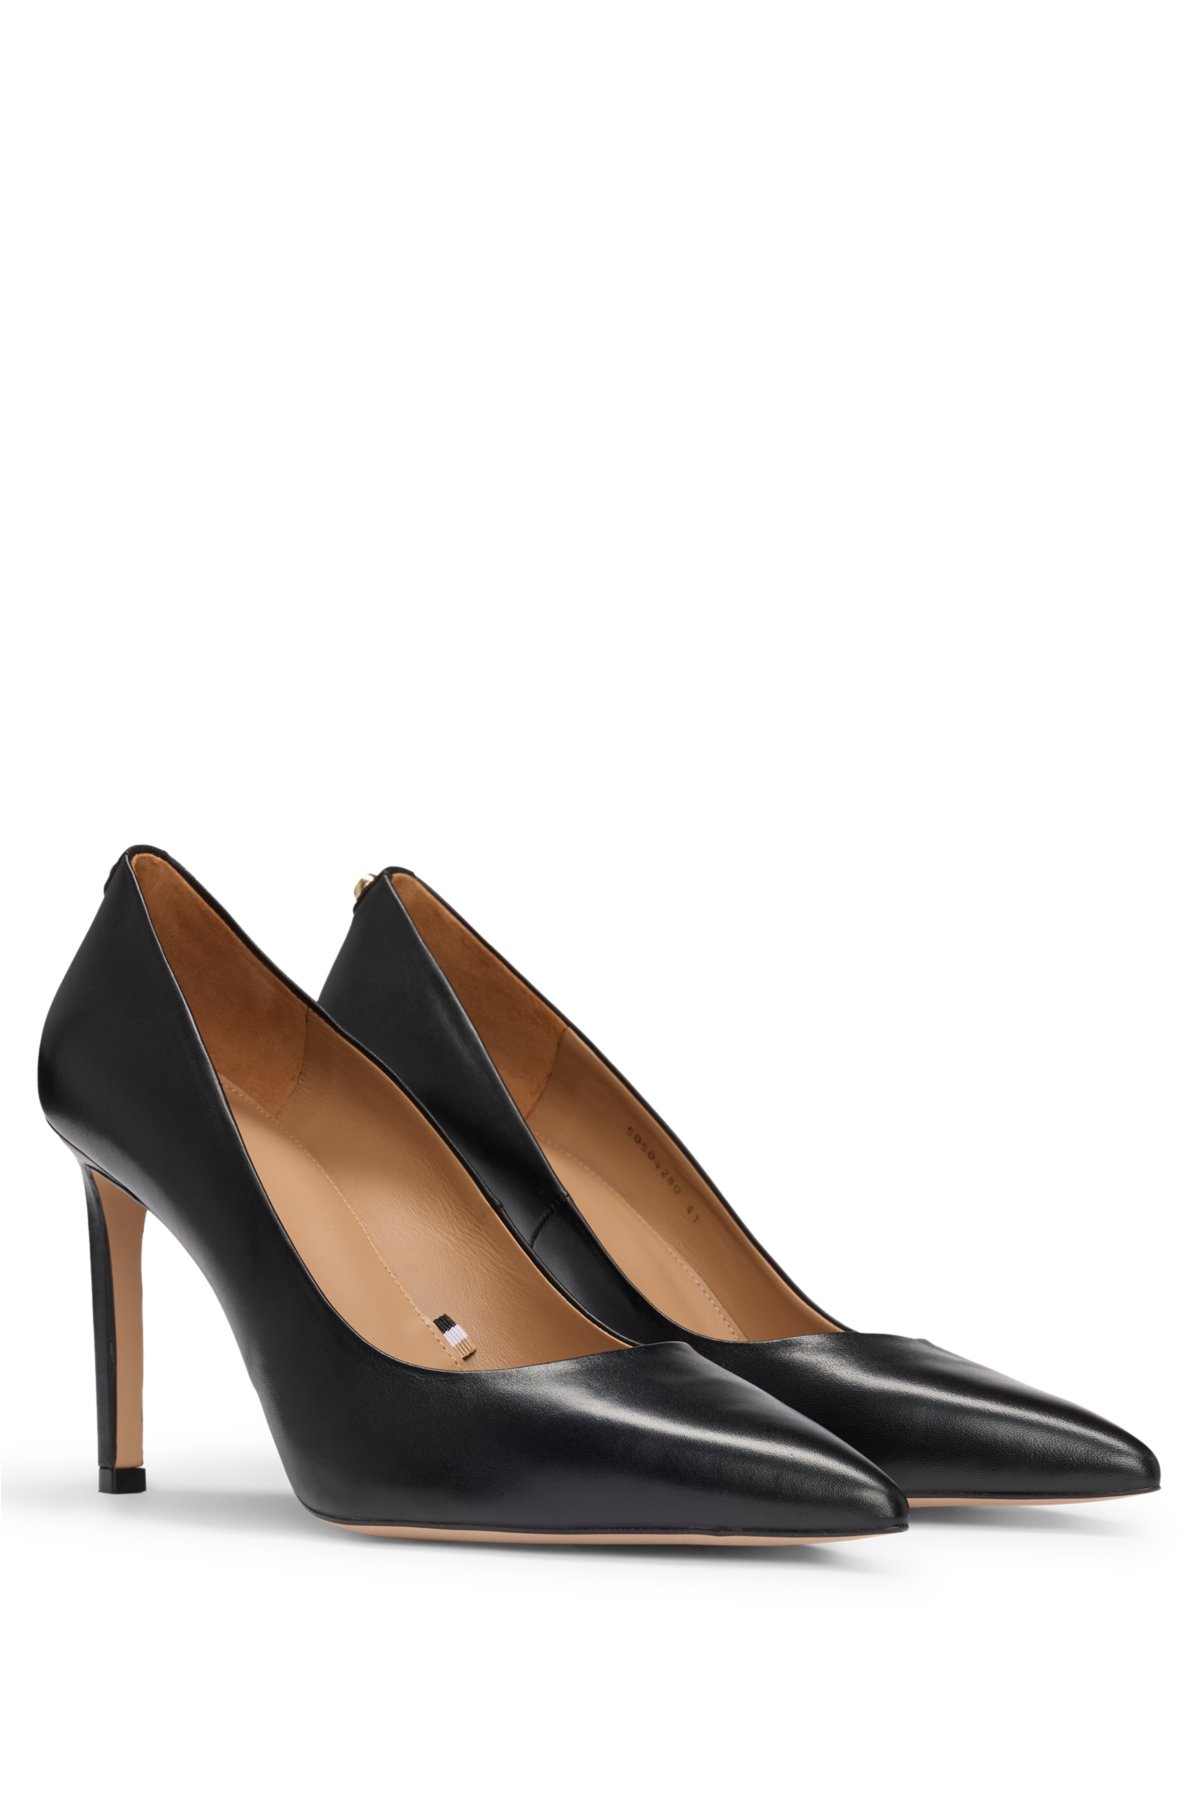 Zapatos de salón Mujer Color Negro, Hechos de Piel, Disponibles Desde  Talla 36 hasta Talla 41